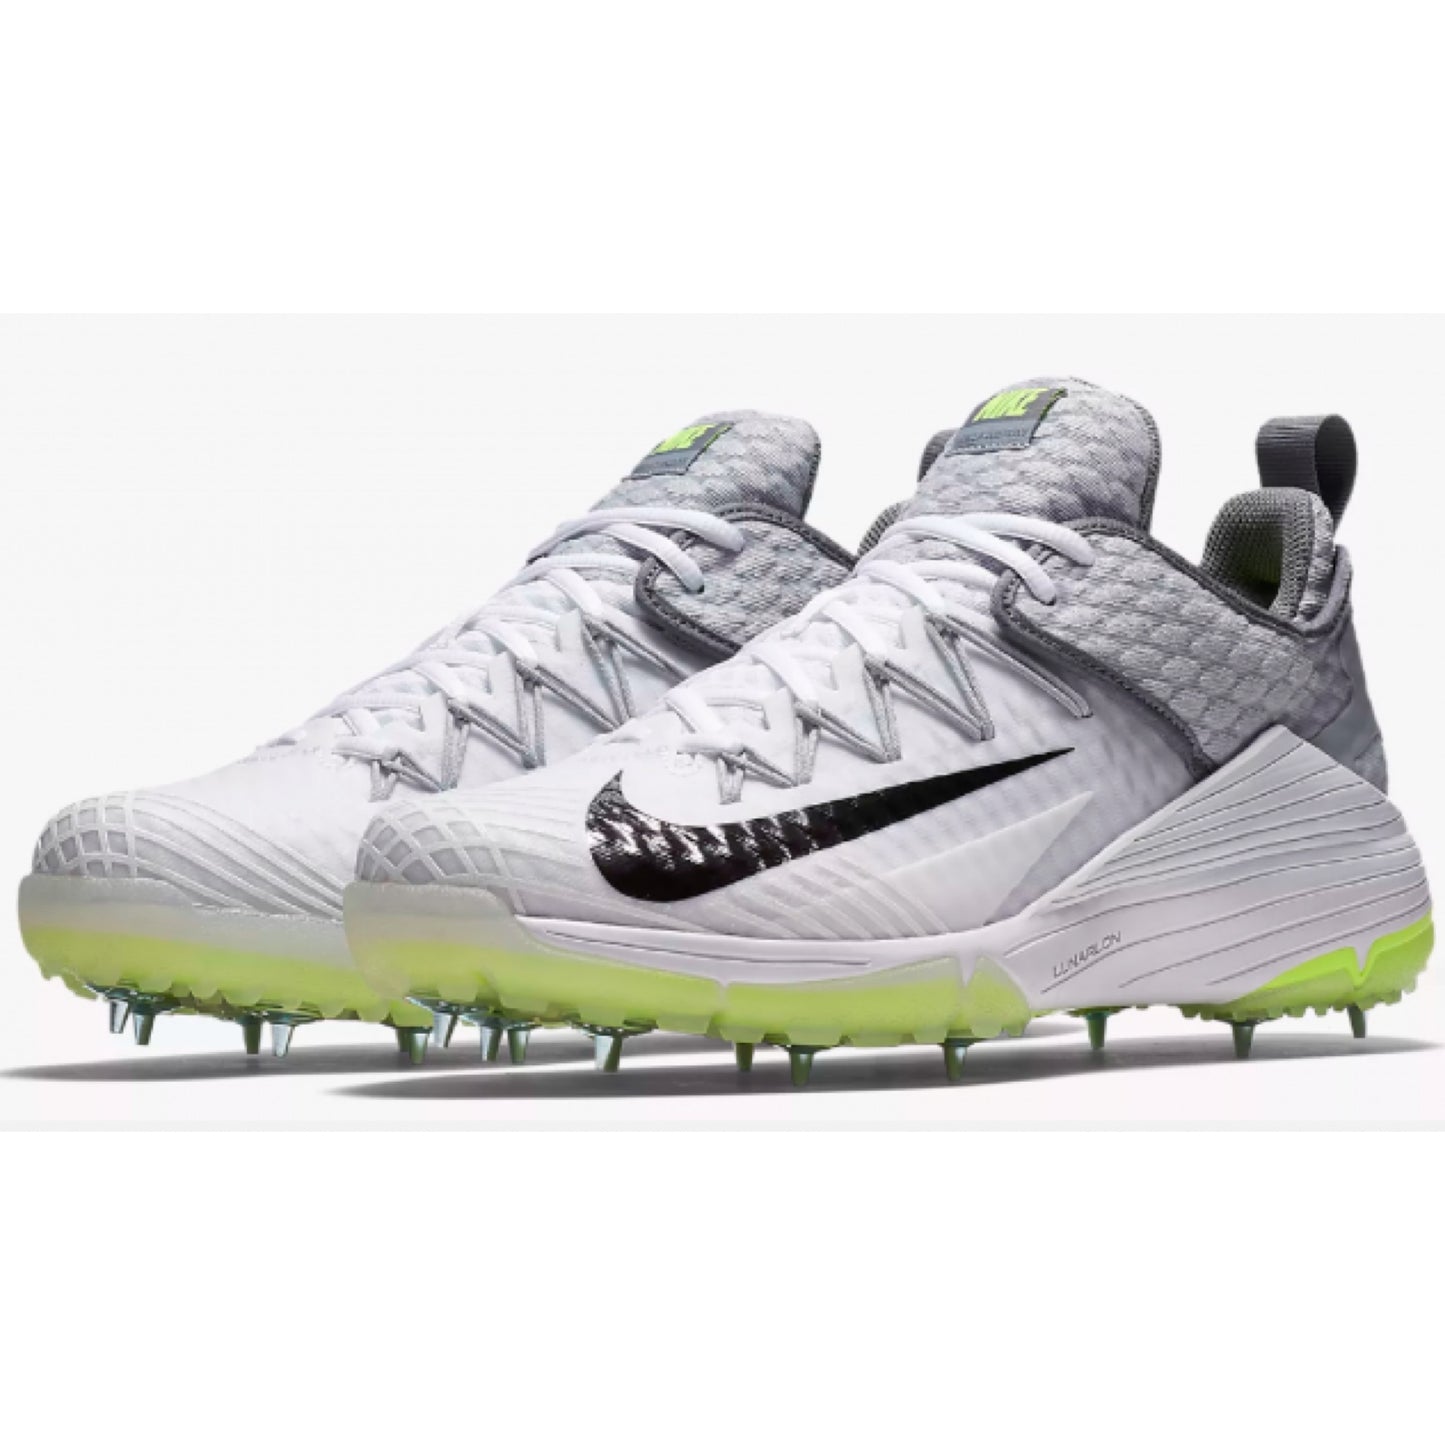 Nike Lunar Audacity Spike Cricket Shoes